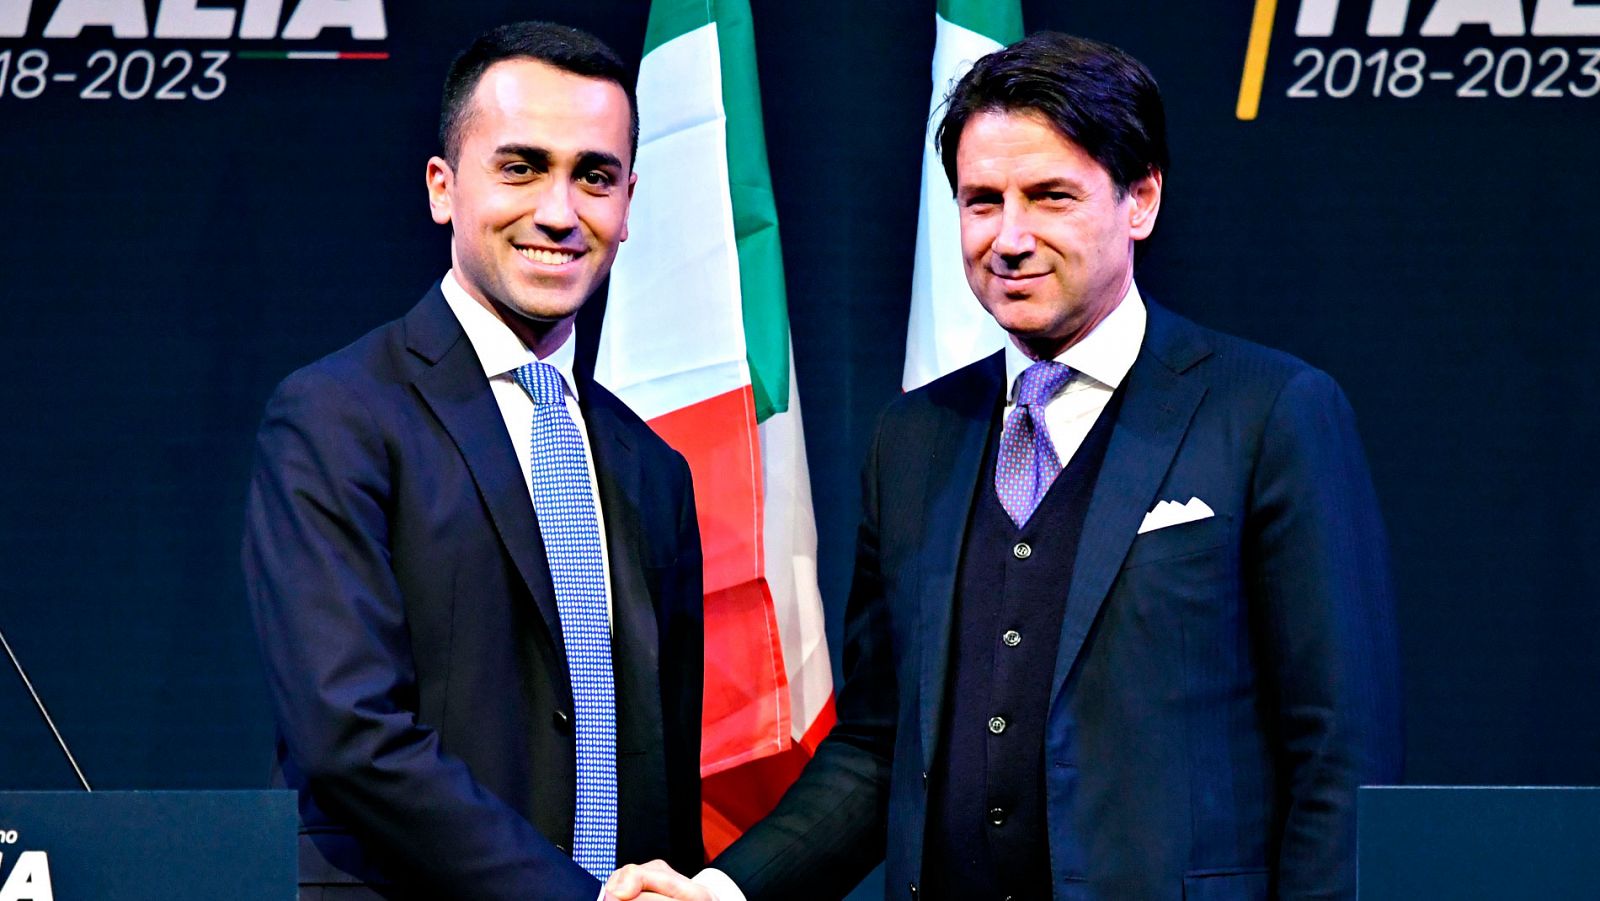 Italia primer ministro - El M5S y la Liga proponen a Giuseppe Conte como primer ministro